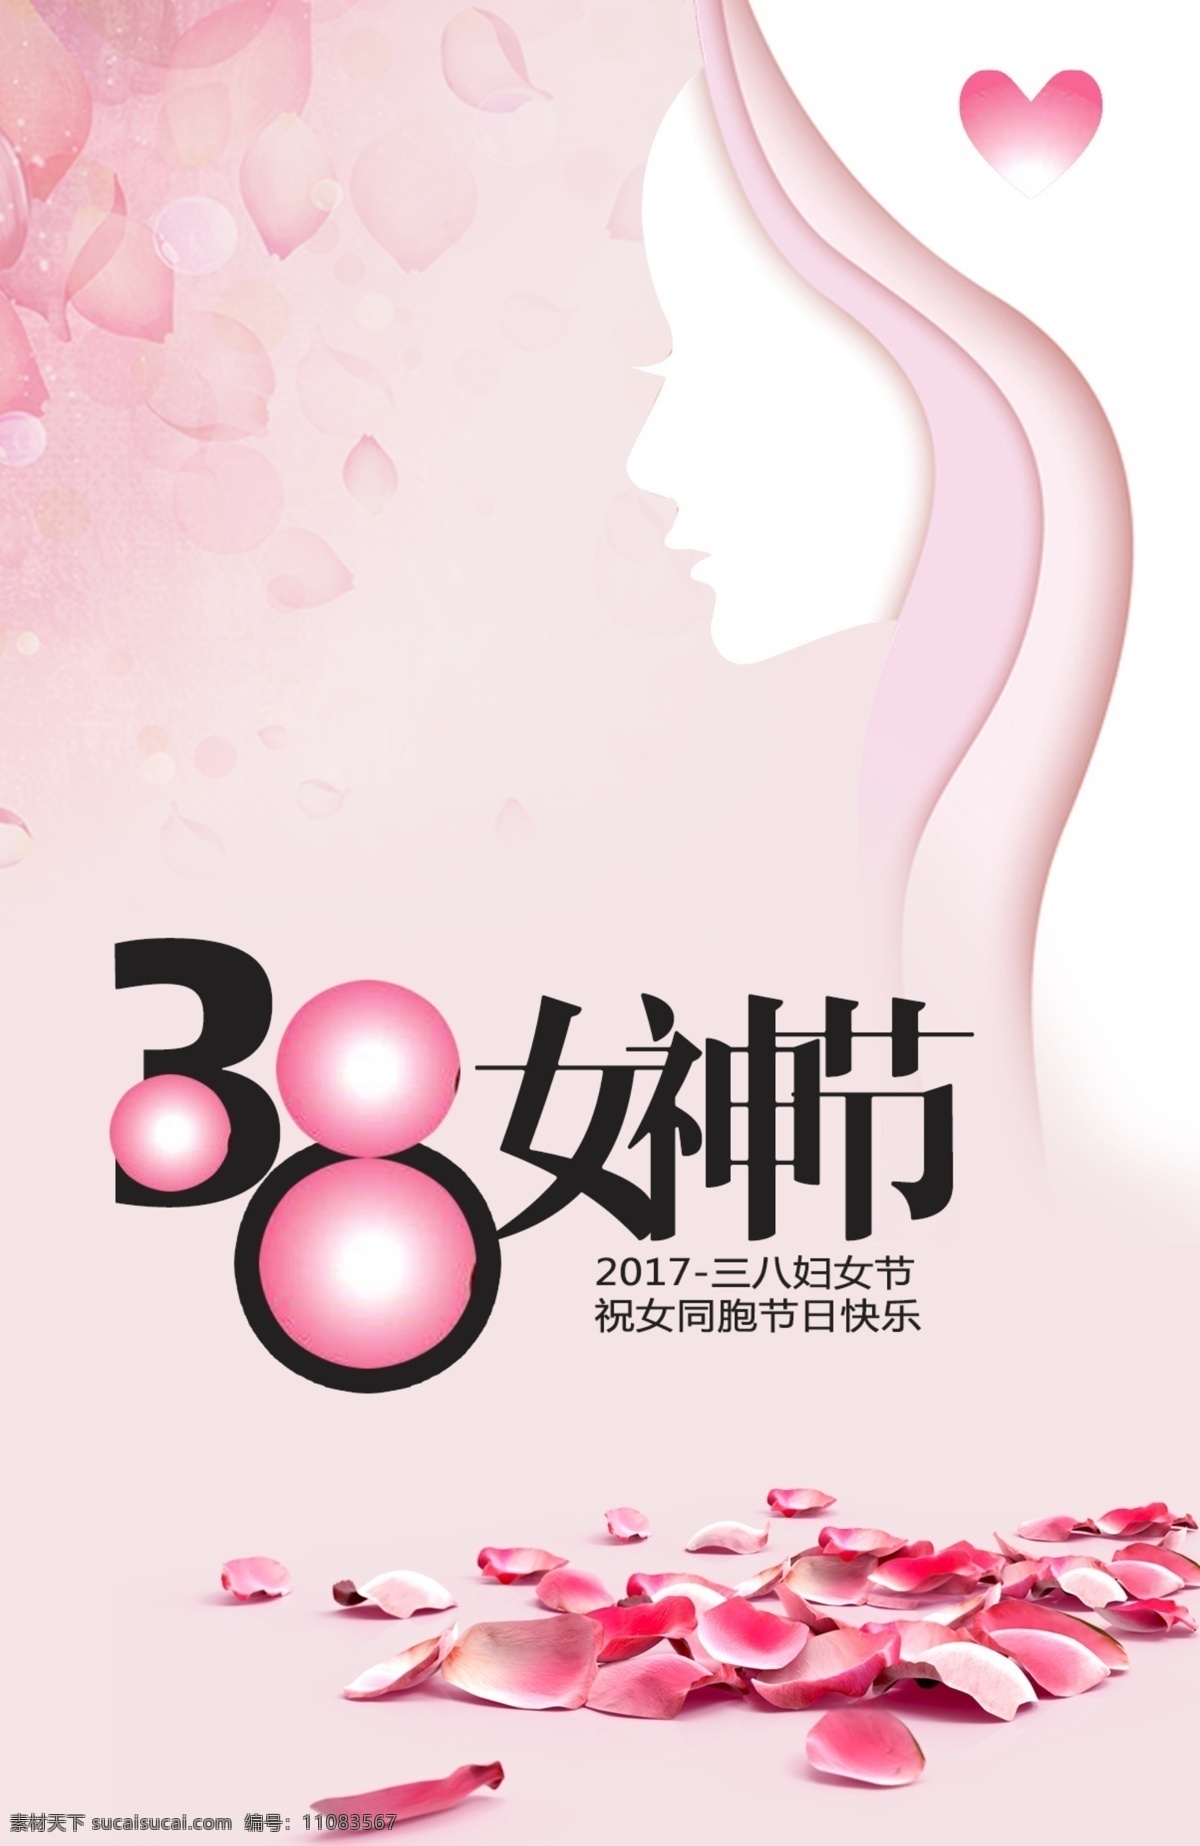 女神 节 38 妇女节 促销 海报 3.8 手绘 3.8妇女节 3 女神节海报